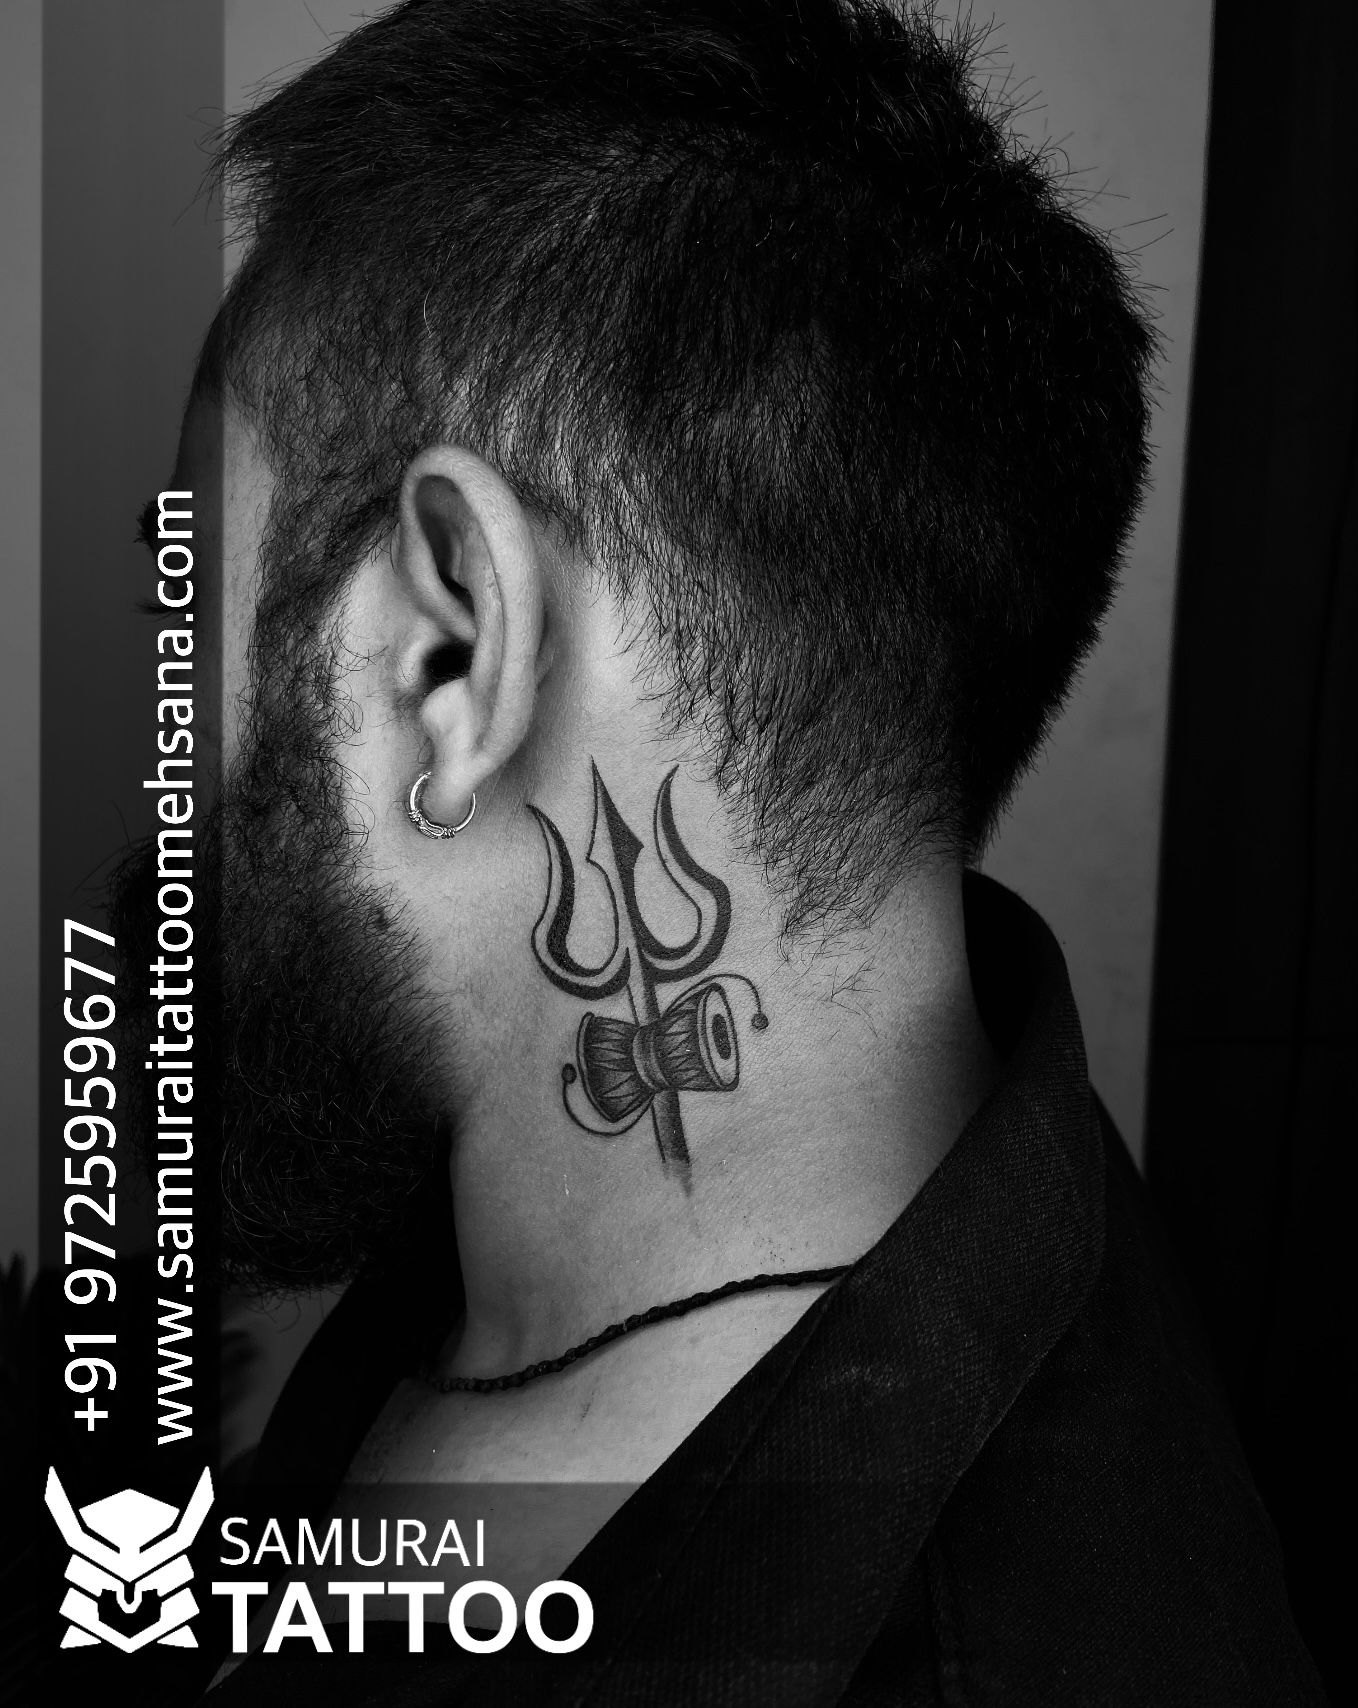 Kingsman tattoo on X: 